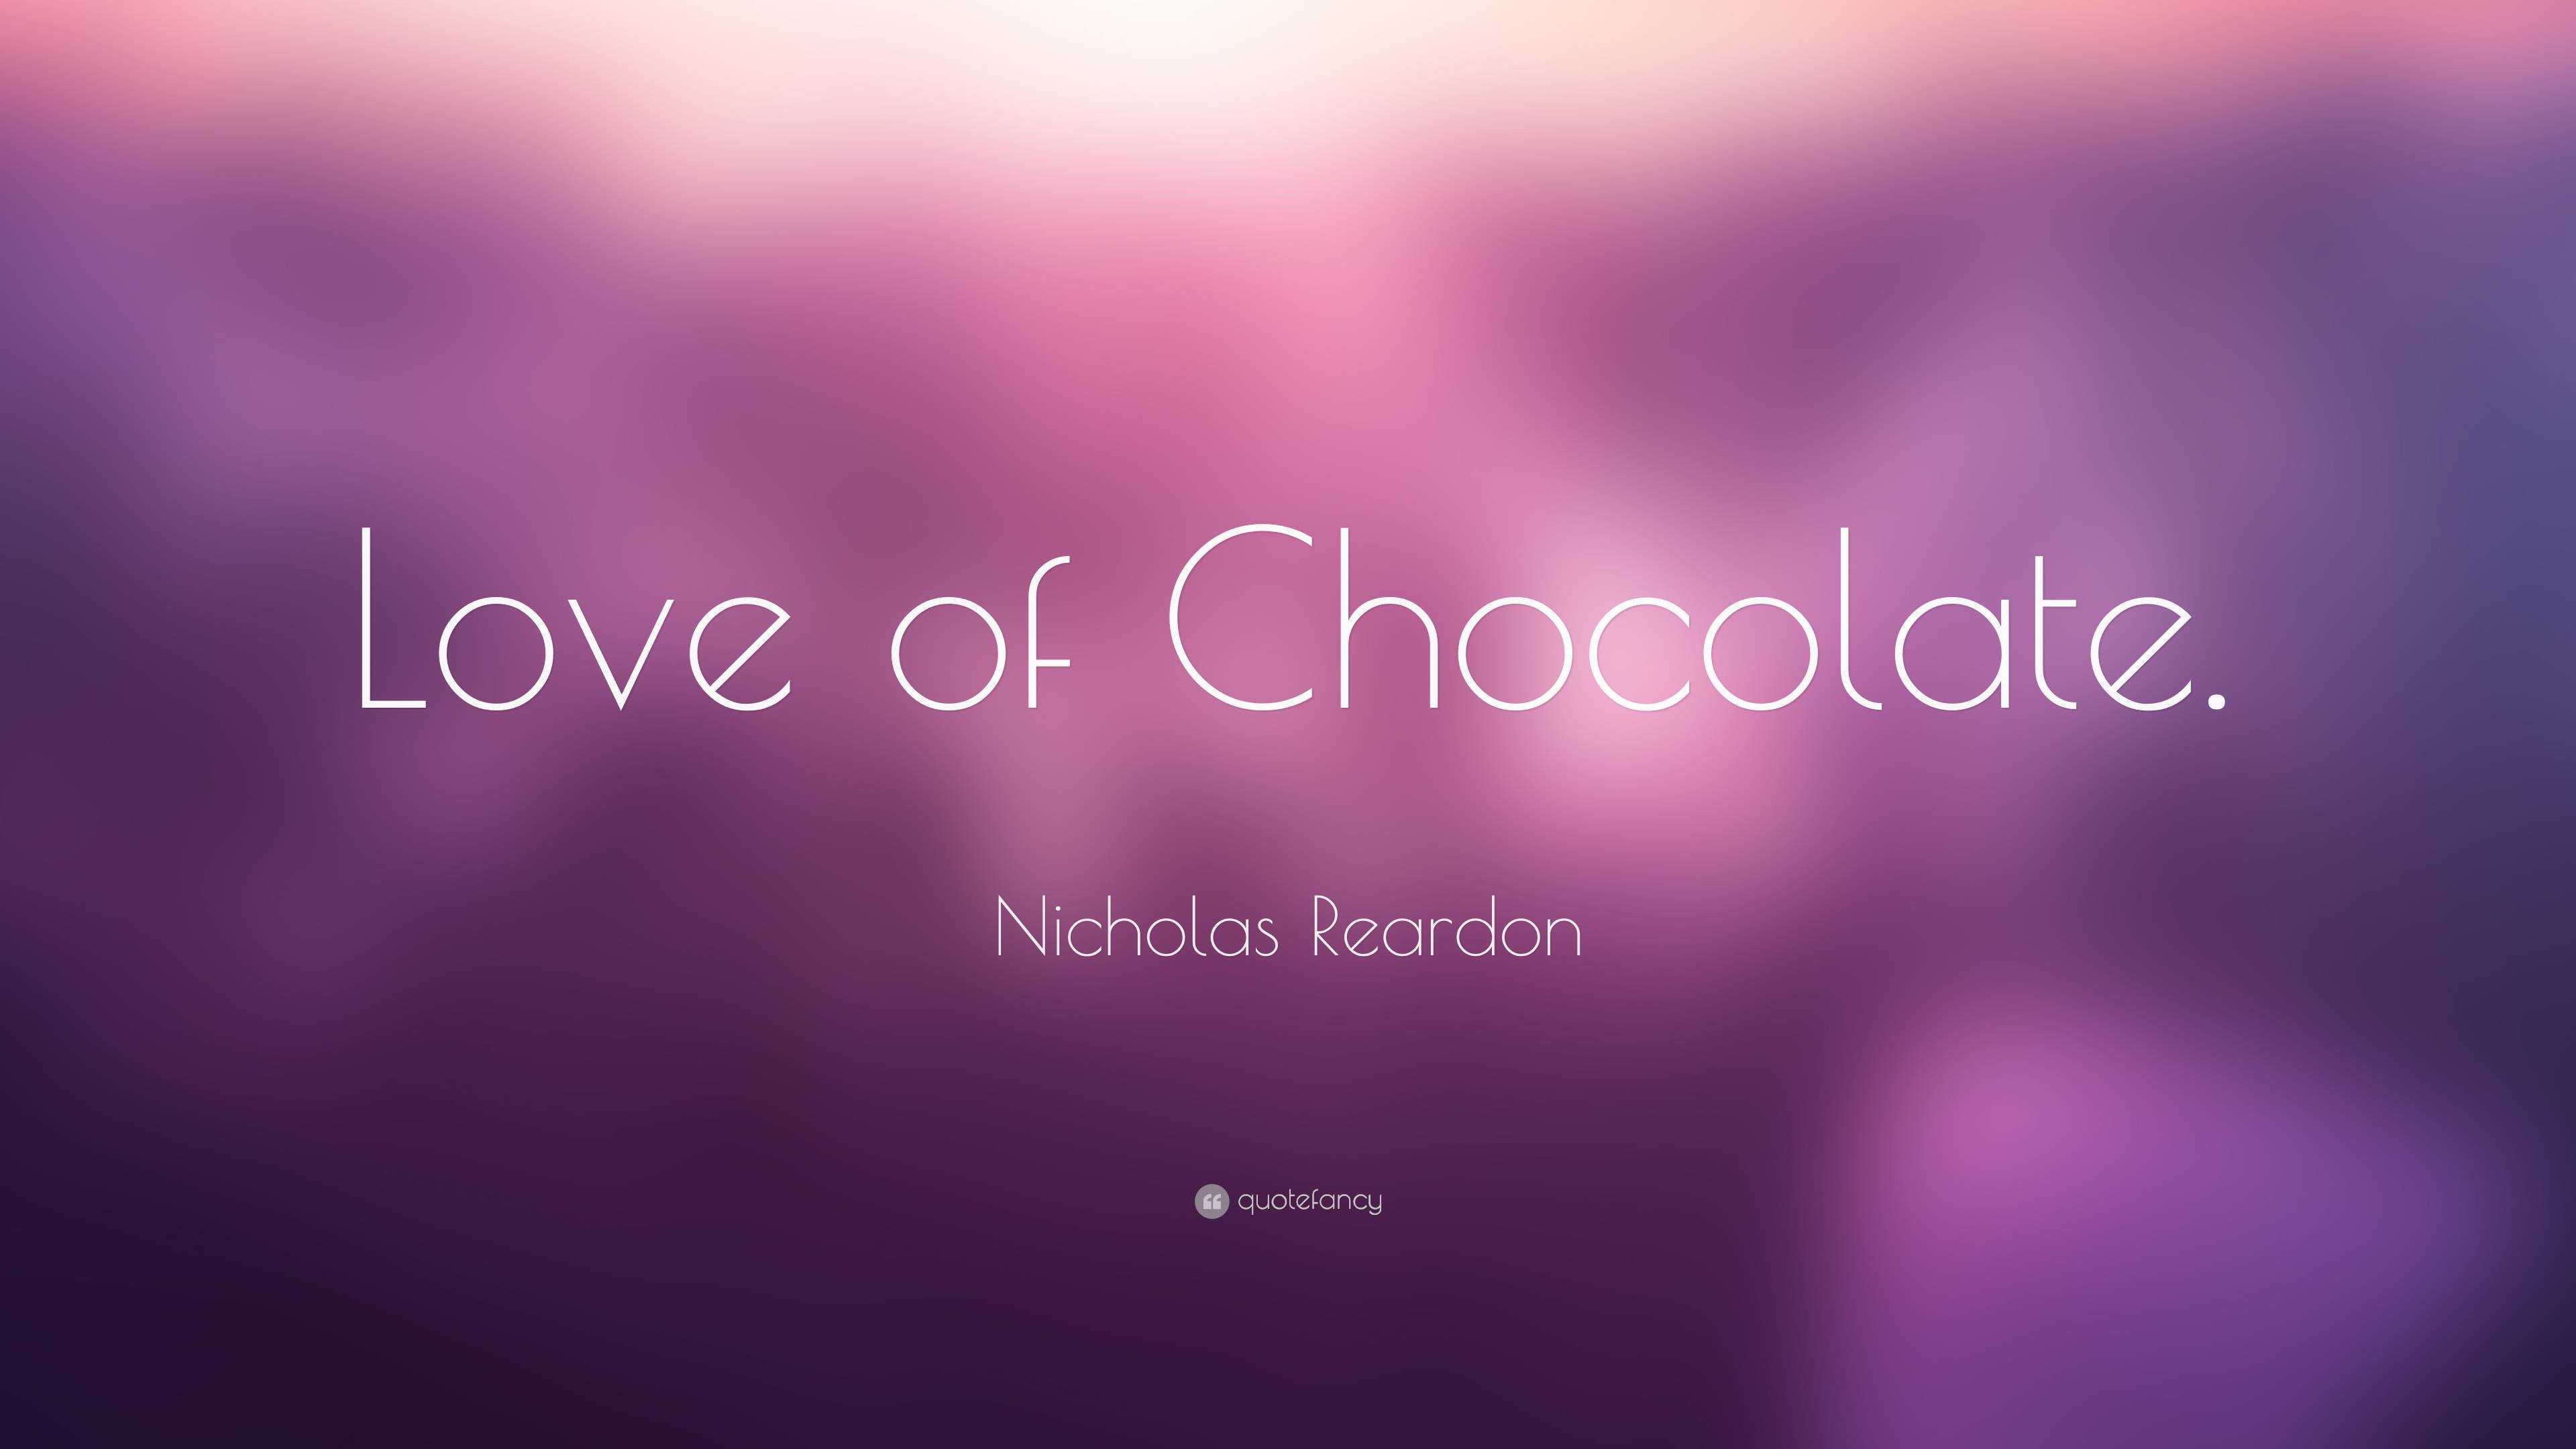 Nicholas Reardon Quote: “Love of Chocolate.”